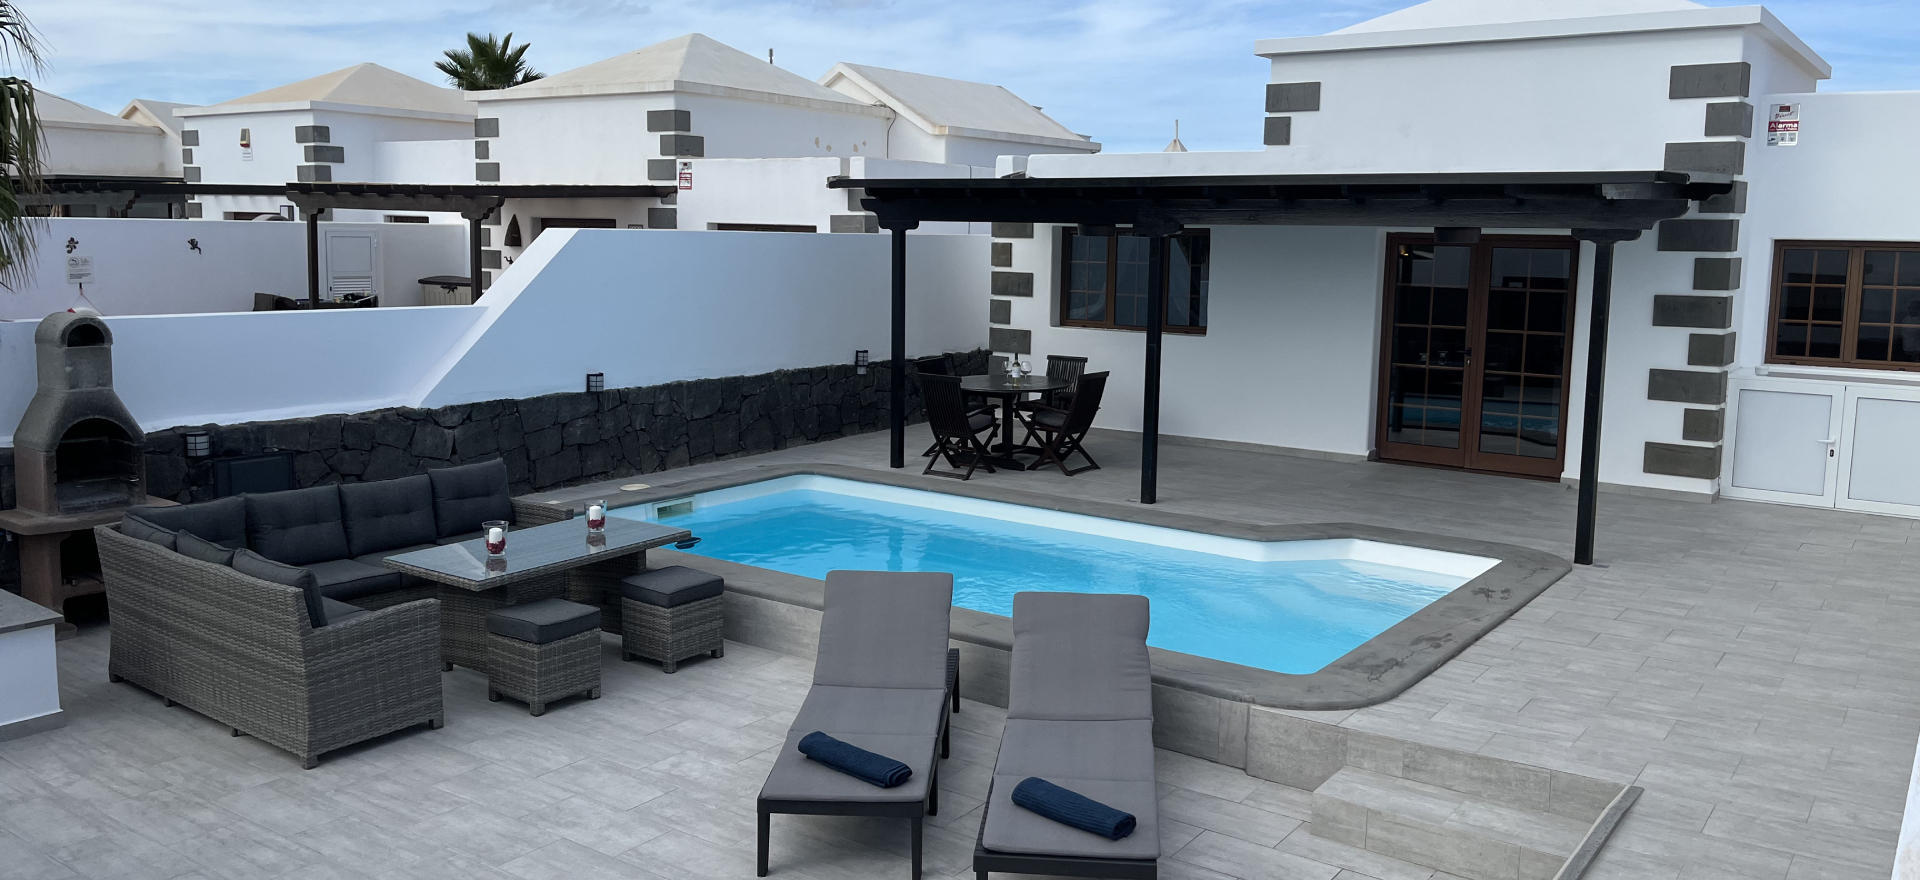 Villas to rent in Playa Blanca - Villa Arabella - 2 Bedrooms